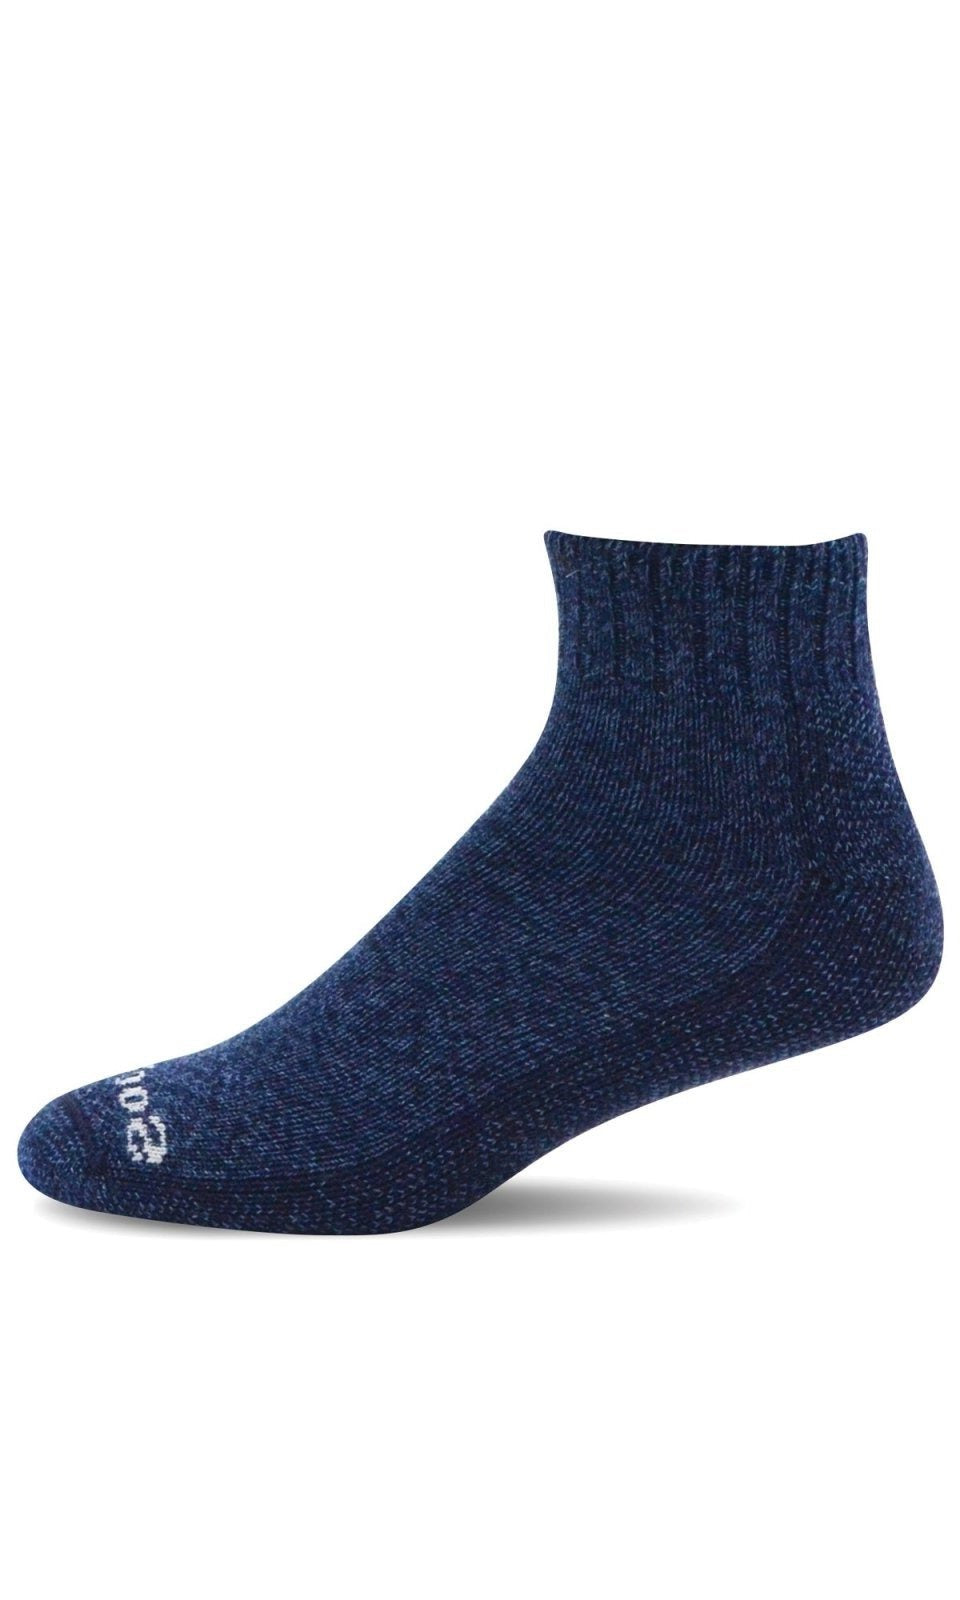 Big Easy Mini | Men | Navy - Socks - Sockwell